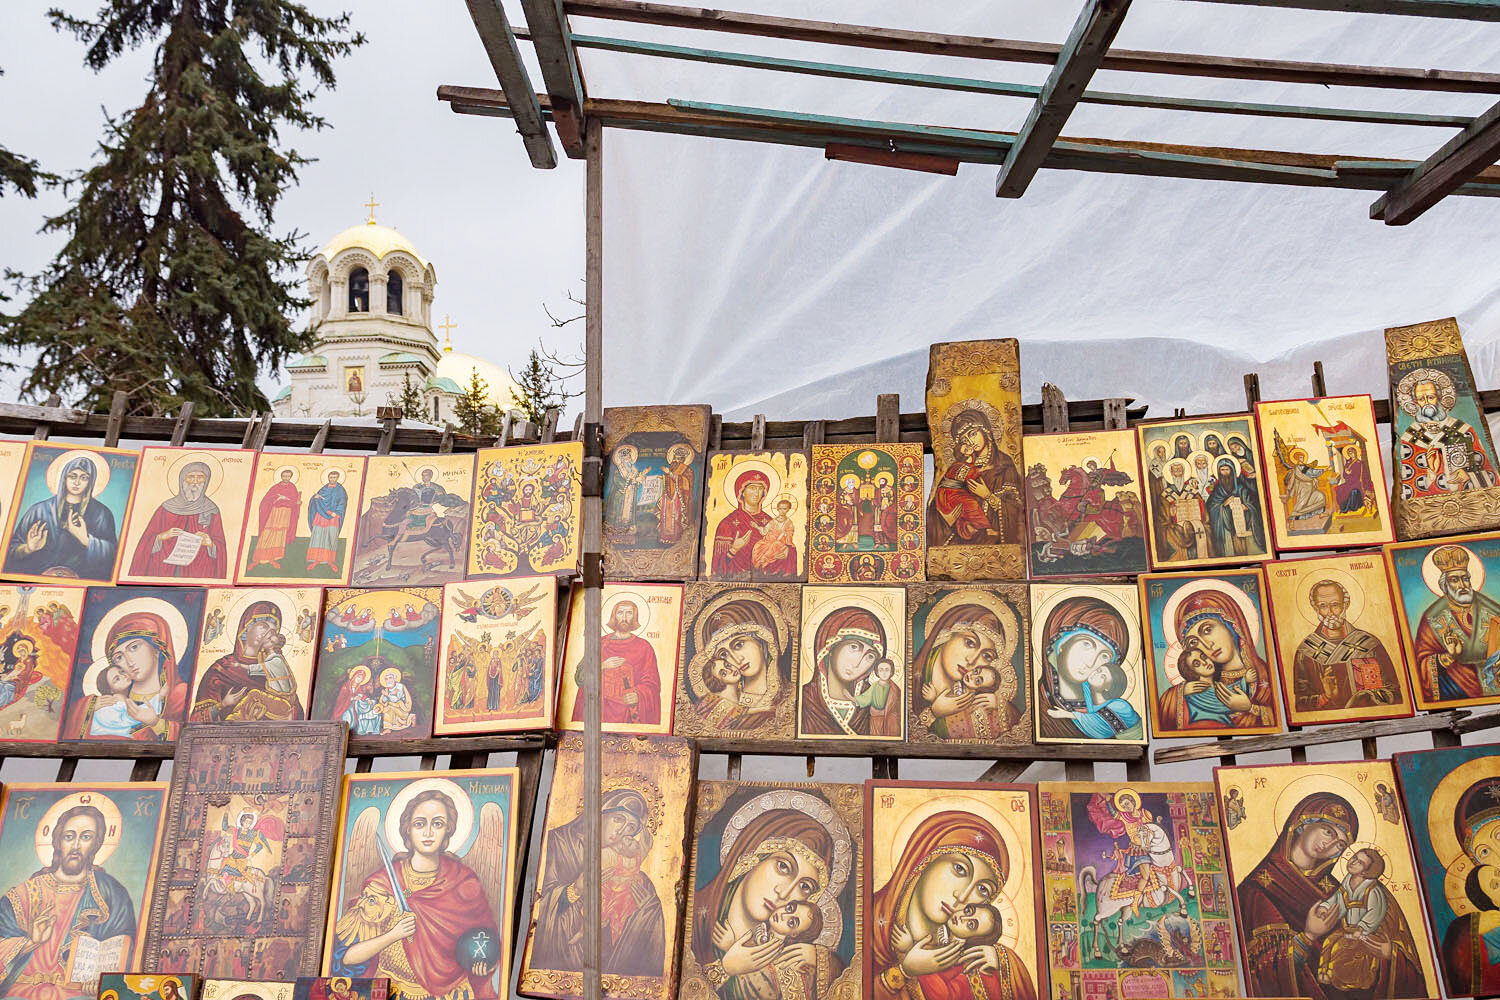  Religious Icons, Sofia, Bulgaria 